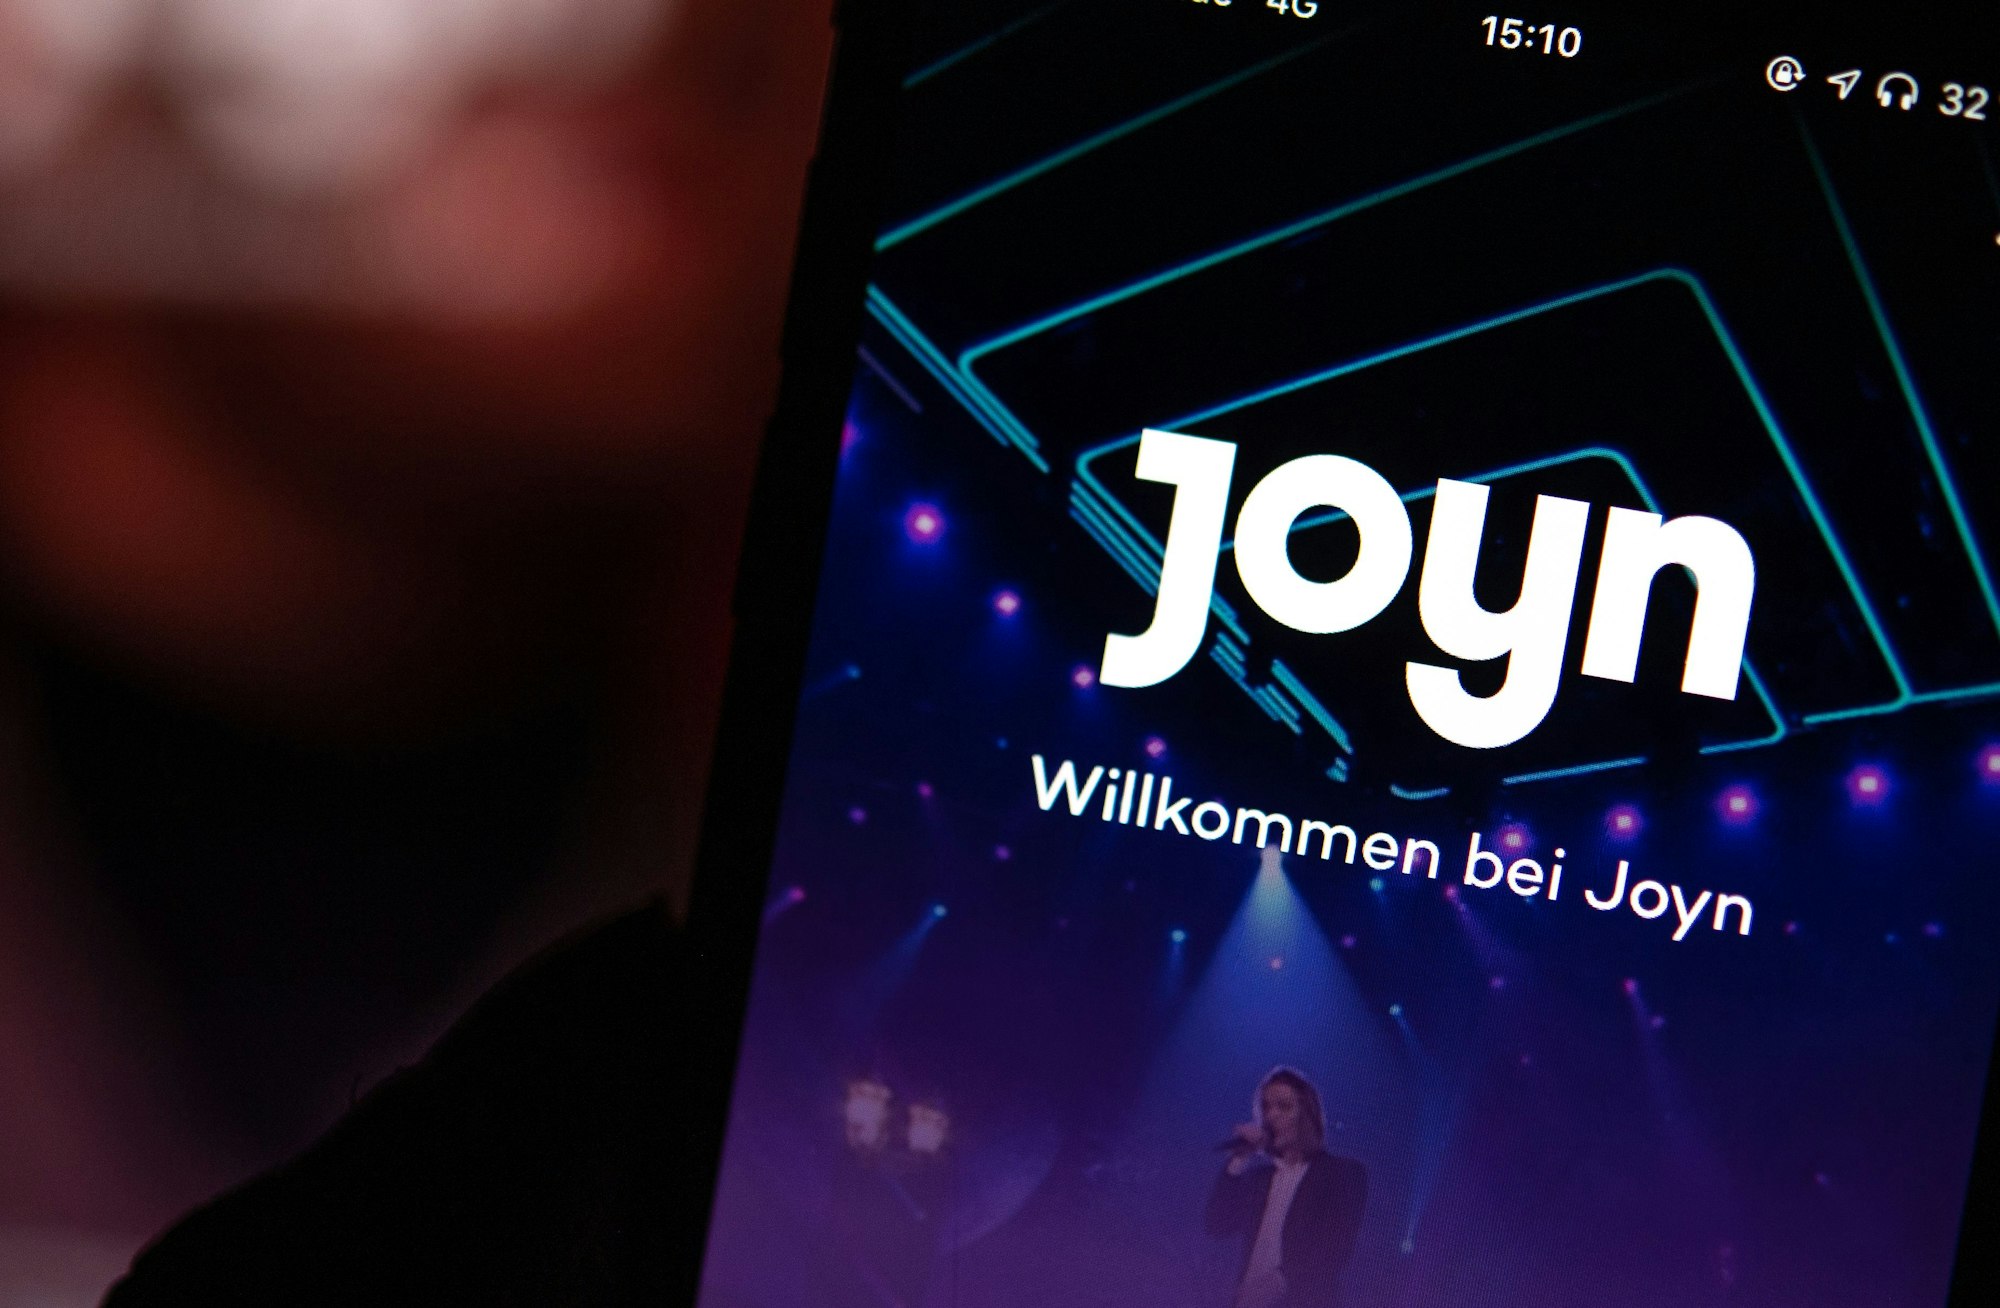 Auf dem Bildschirm eines iPhones wird die App der Streaming-Plattform Joyn angezeigt. 